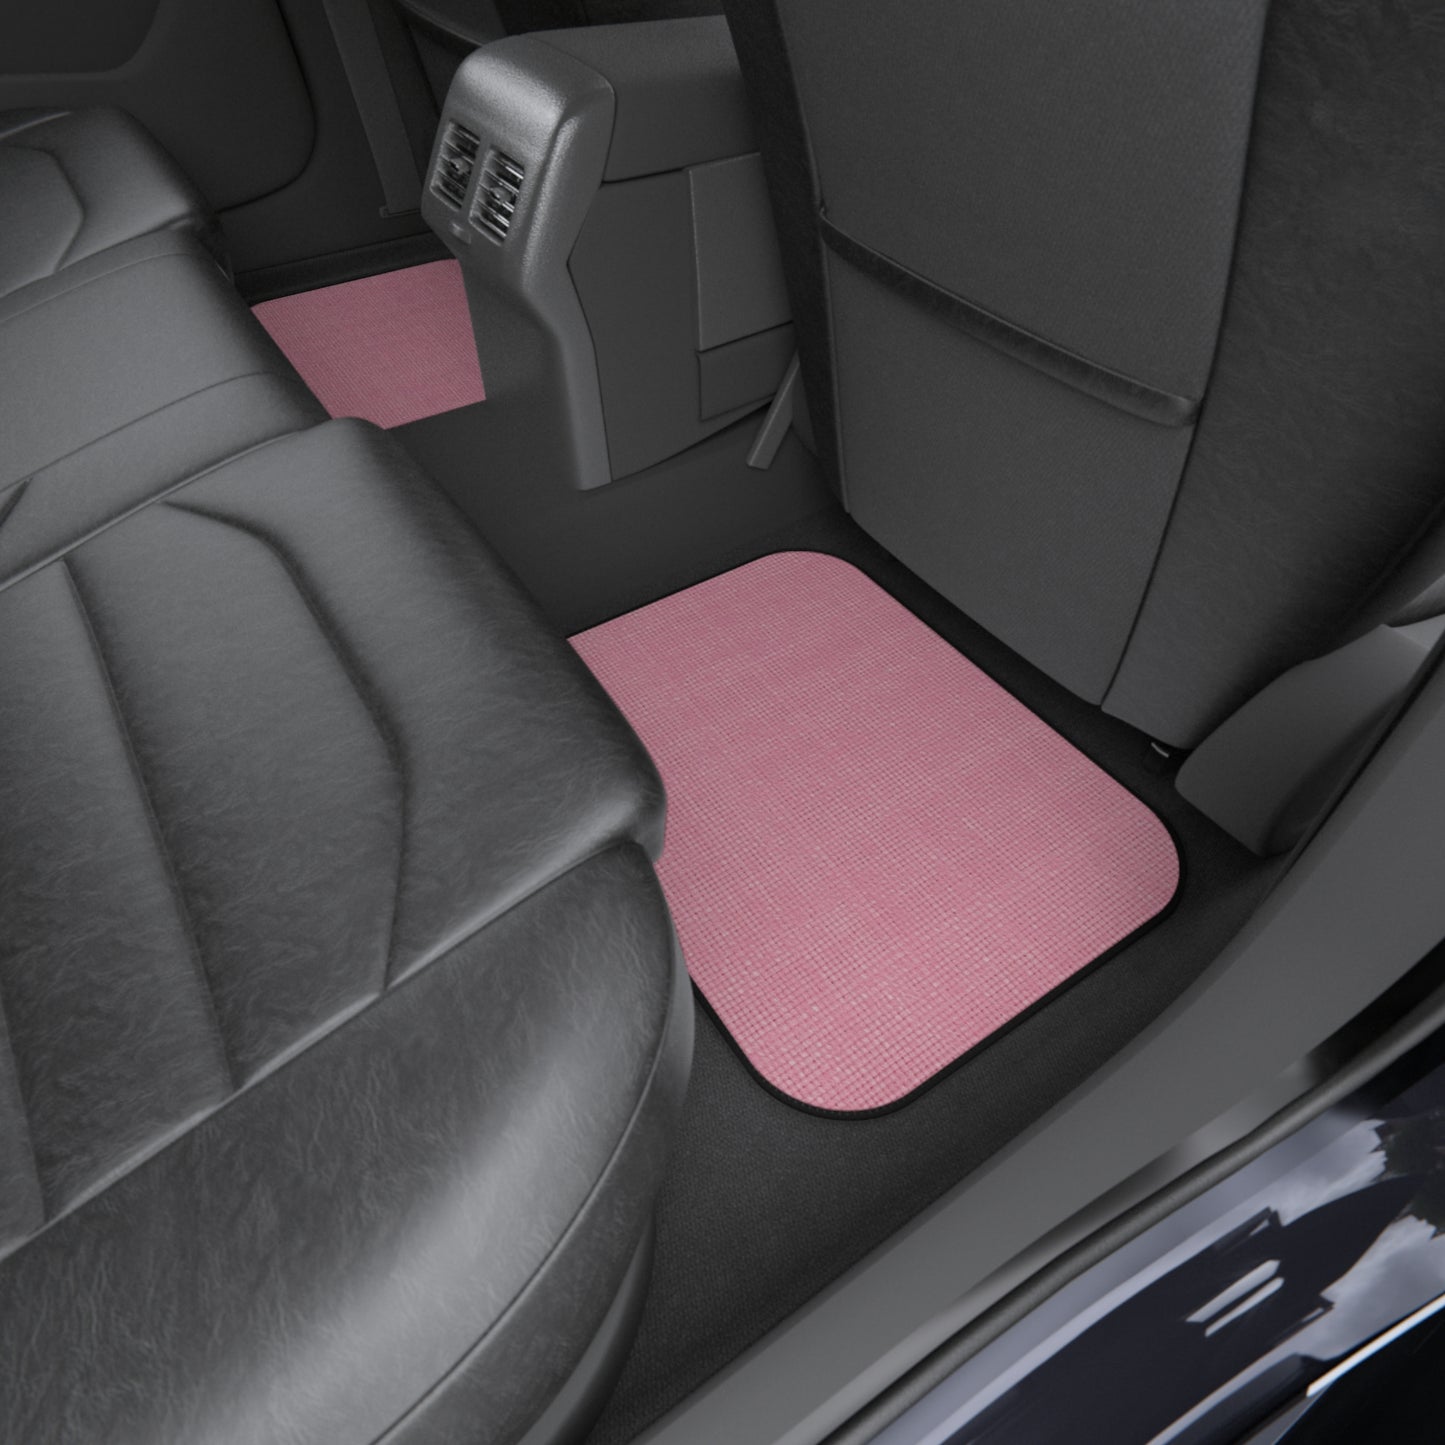 Pastel Rose Pink: Denim-Inspired, Refreshing Fabric Design - Car Mats (Set of 4)